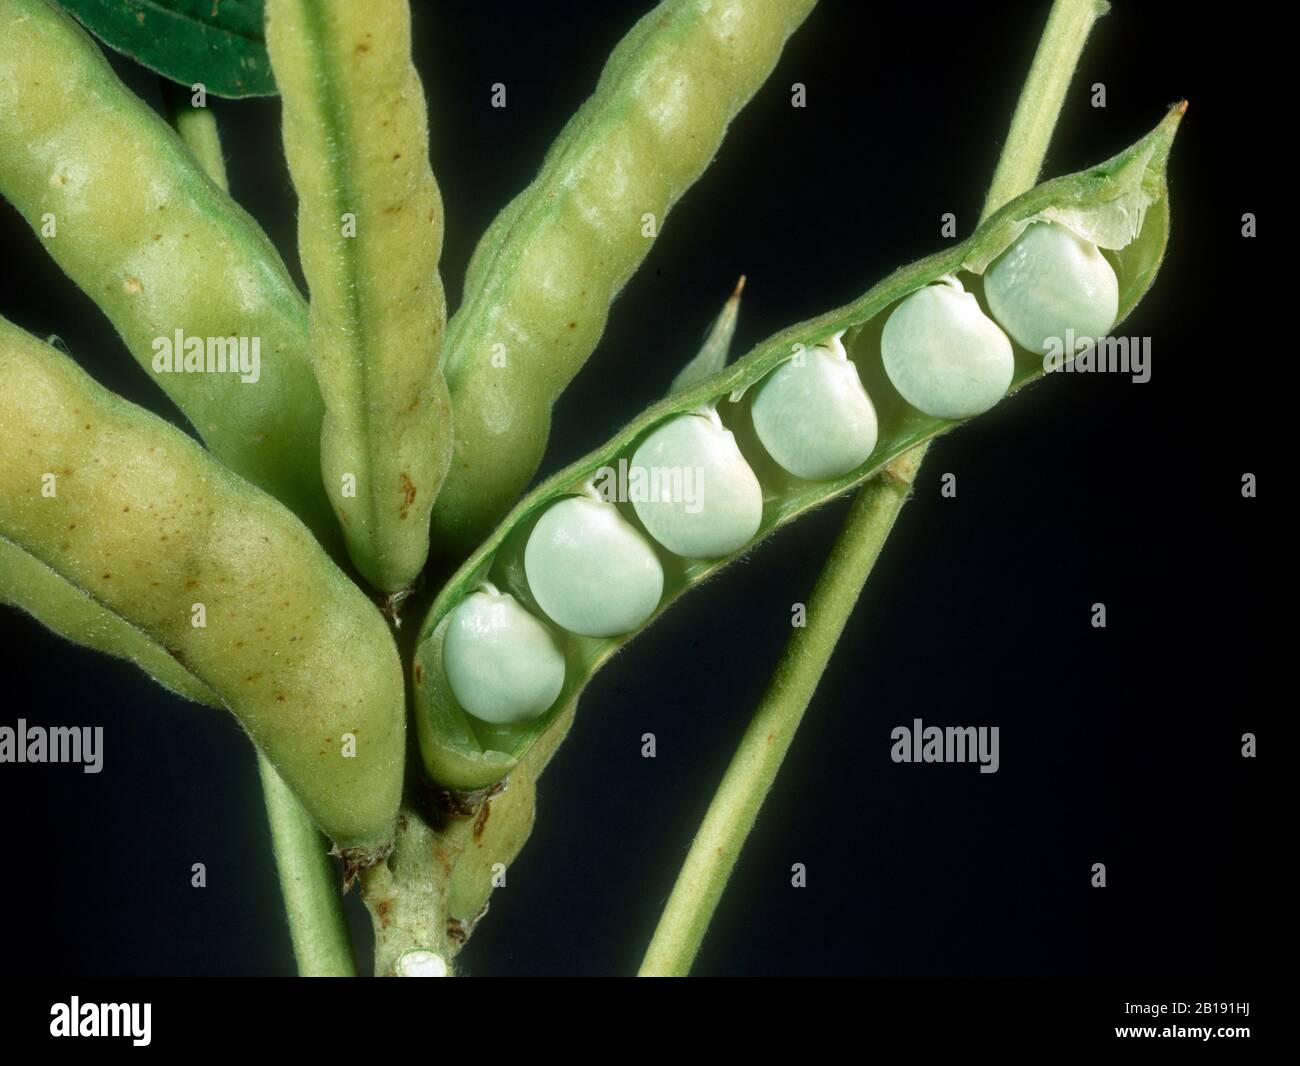 Ein Fruchtlupin (Lupinus albus) öffnete sich, um Samen zu zeigen, die als eiweißreiches Viehfutter oder beim Kochen verwendet werden können Stockfoto